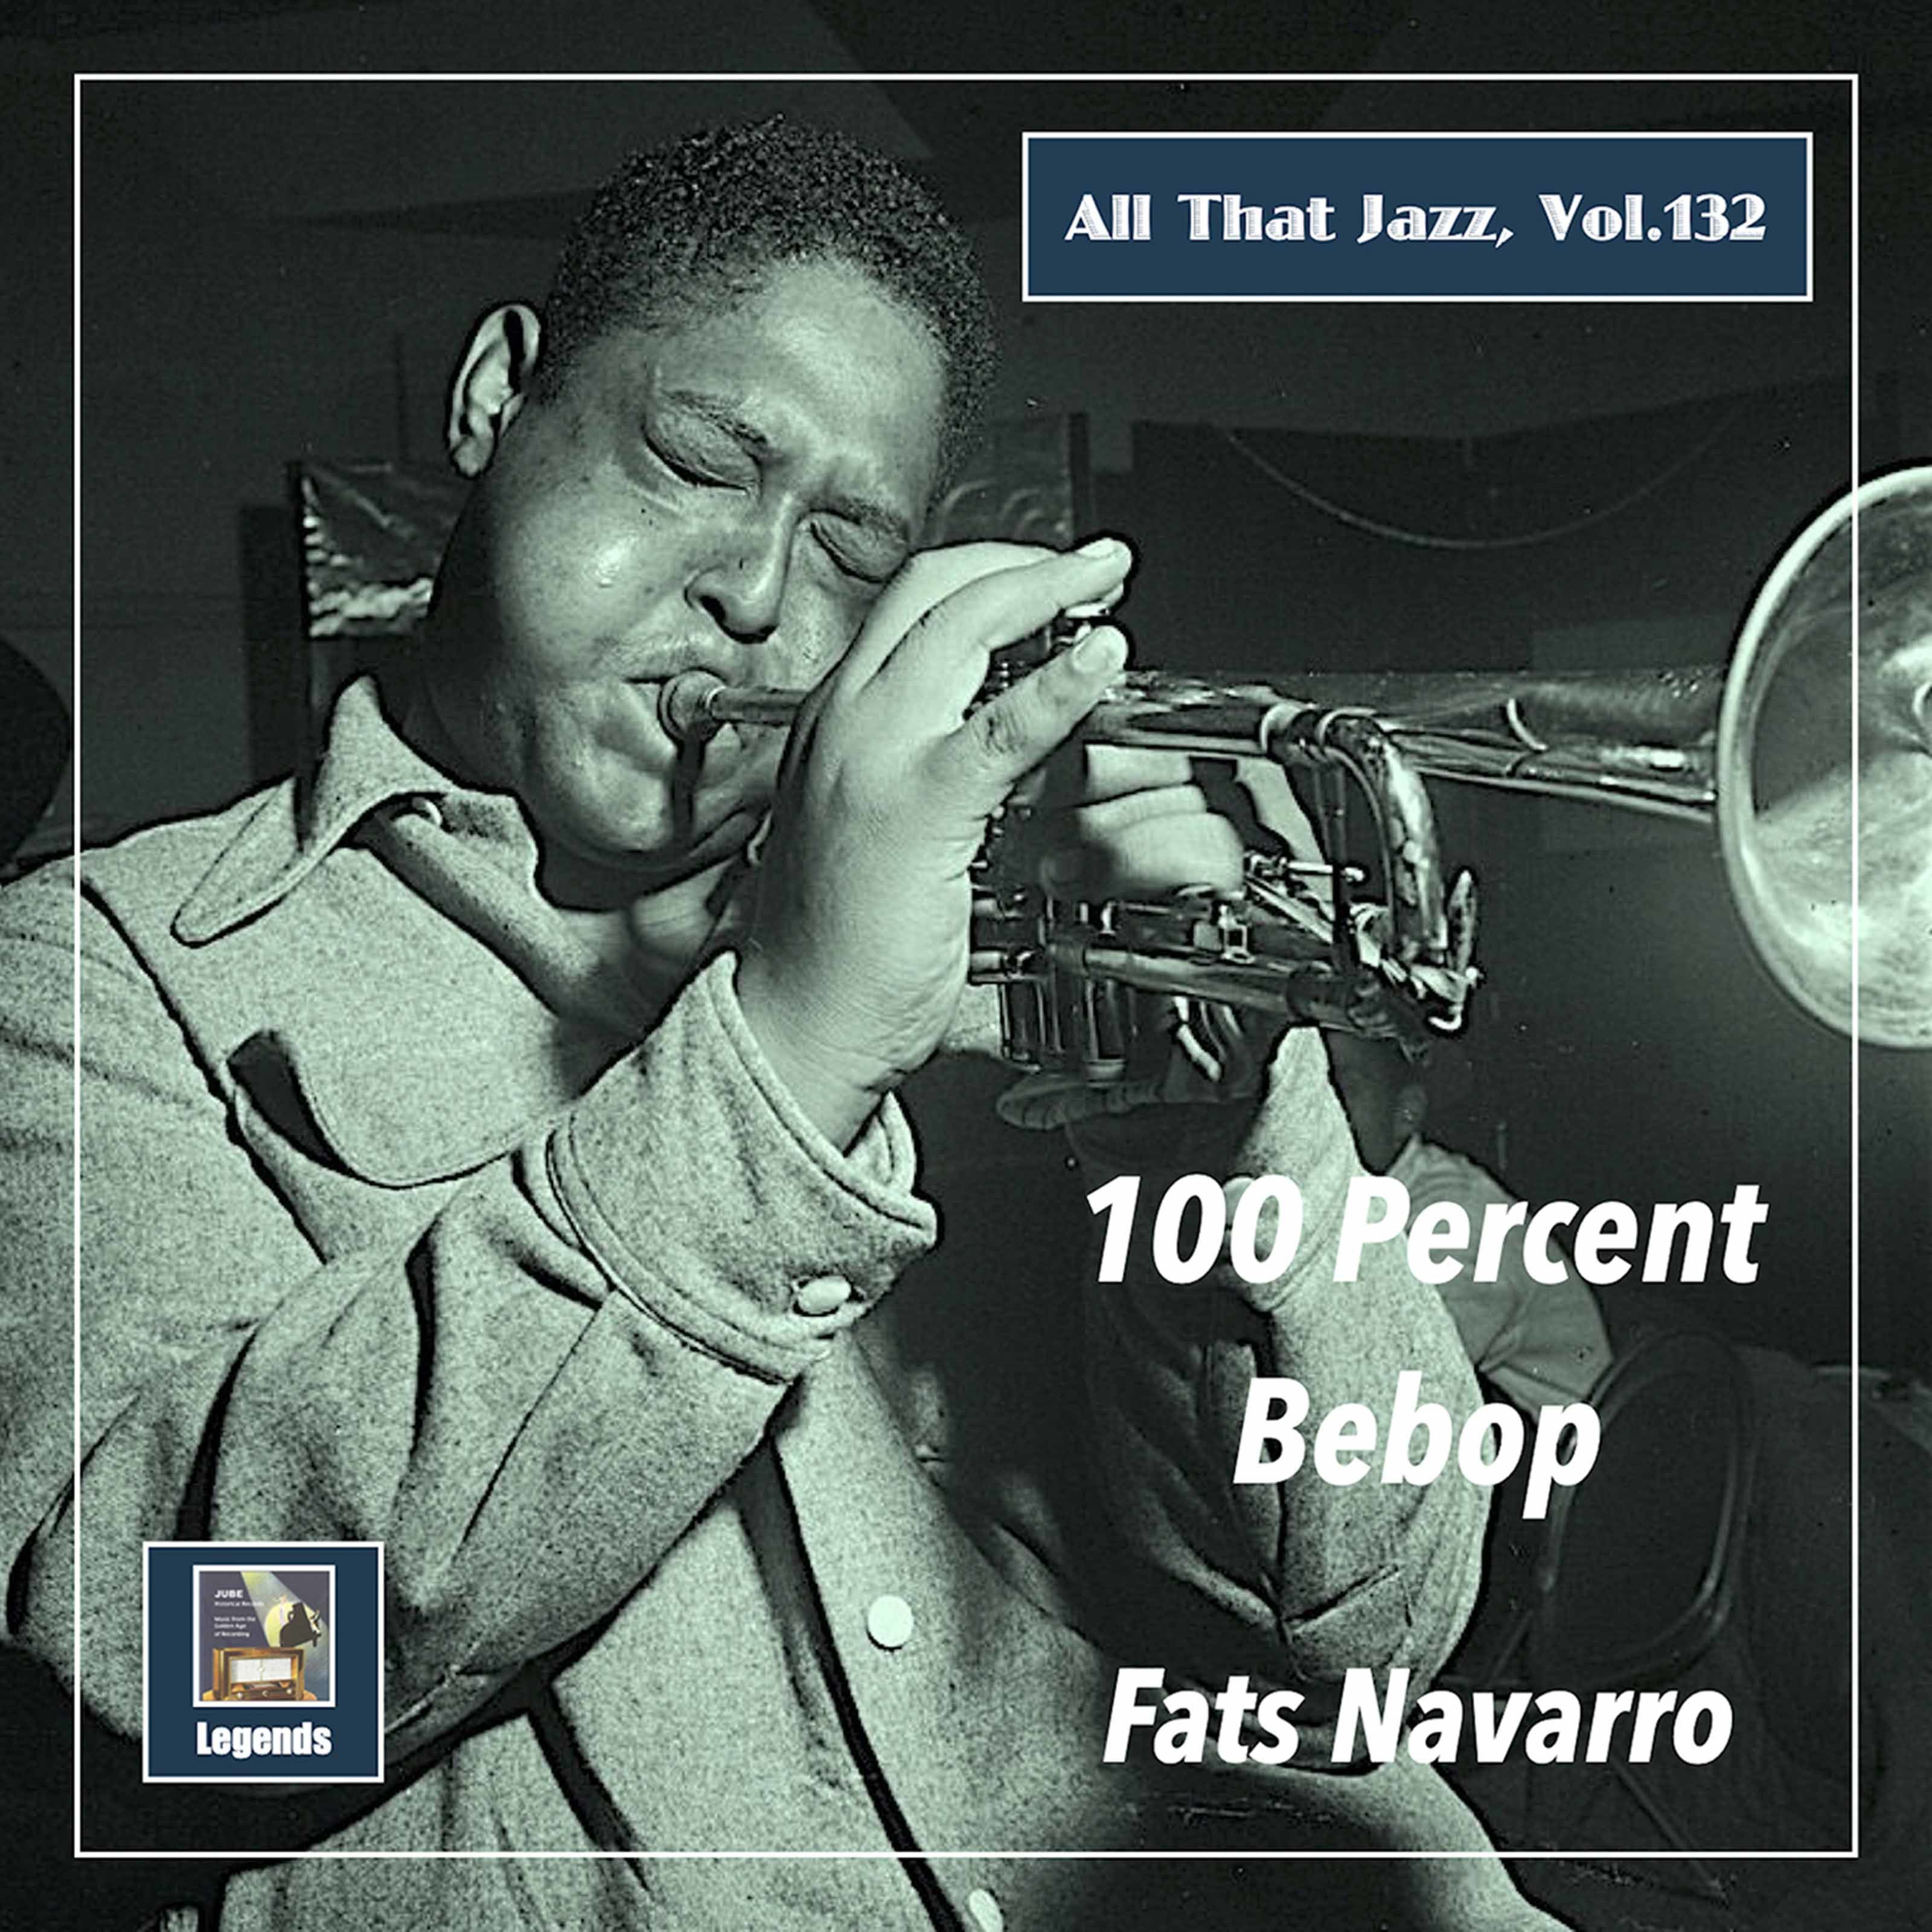 Fats Navarro – All That Jazz, Vol. 132 Fats Navarro – 100 Percent Bebop (Remastered 2020) (2020) [FLAC 24bit/48kHz]